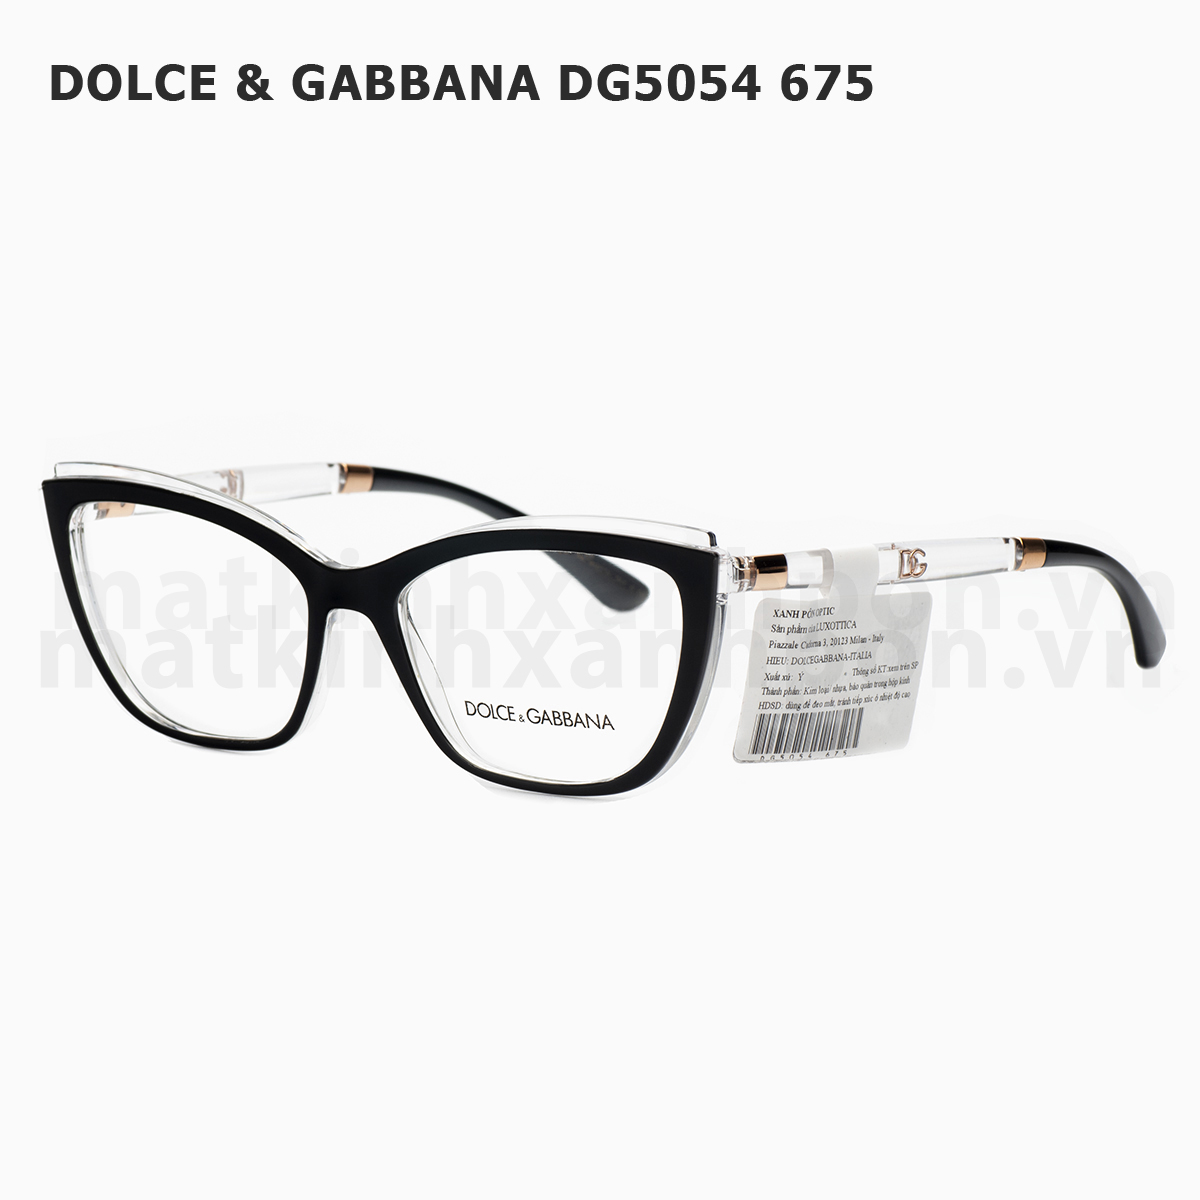 Dolce & Gabbana DG5054 675